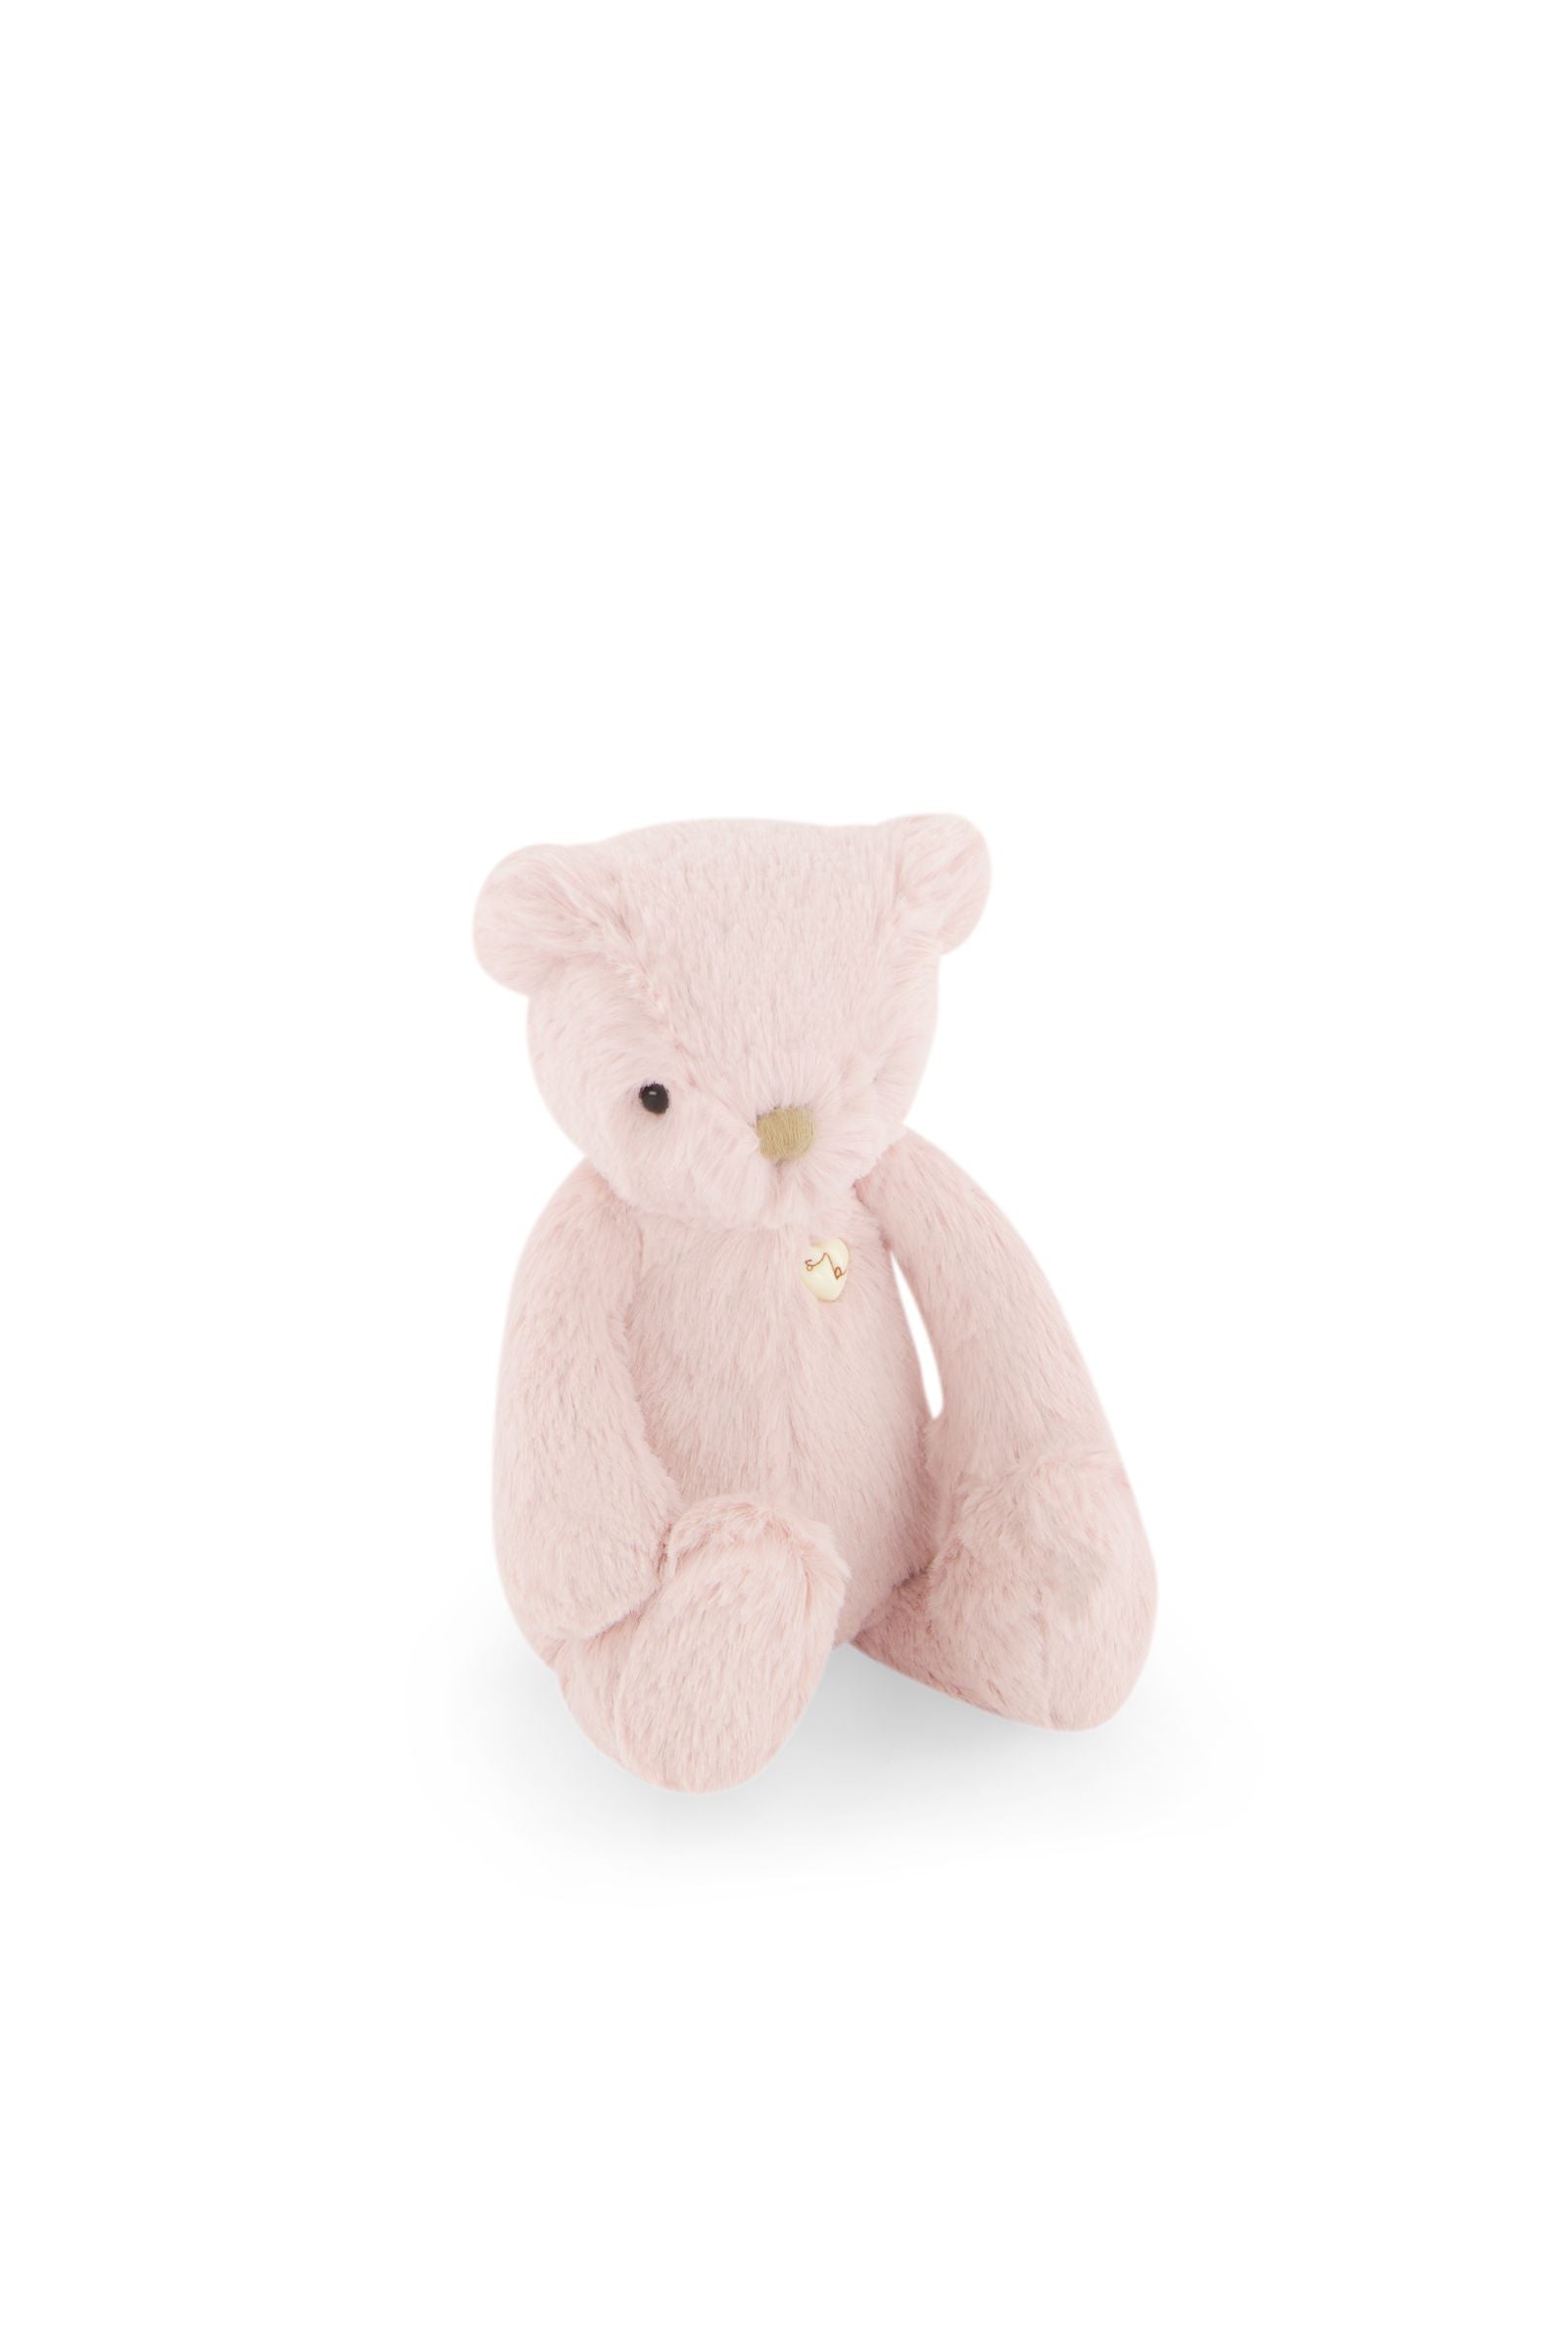 Snuggle Bunnies - George the Bear - Blush 20cm-Toys-Jamie Kay-The Bay Room